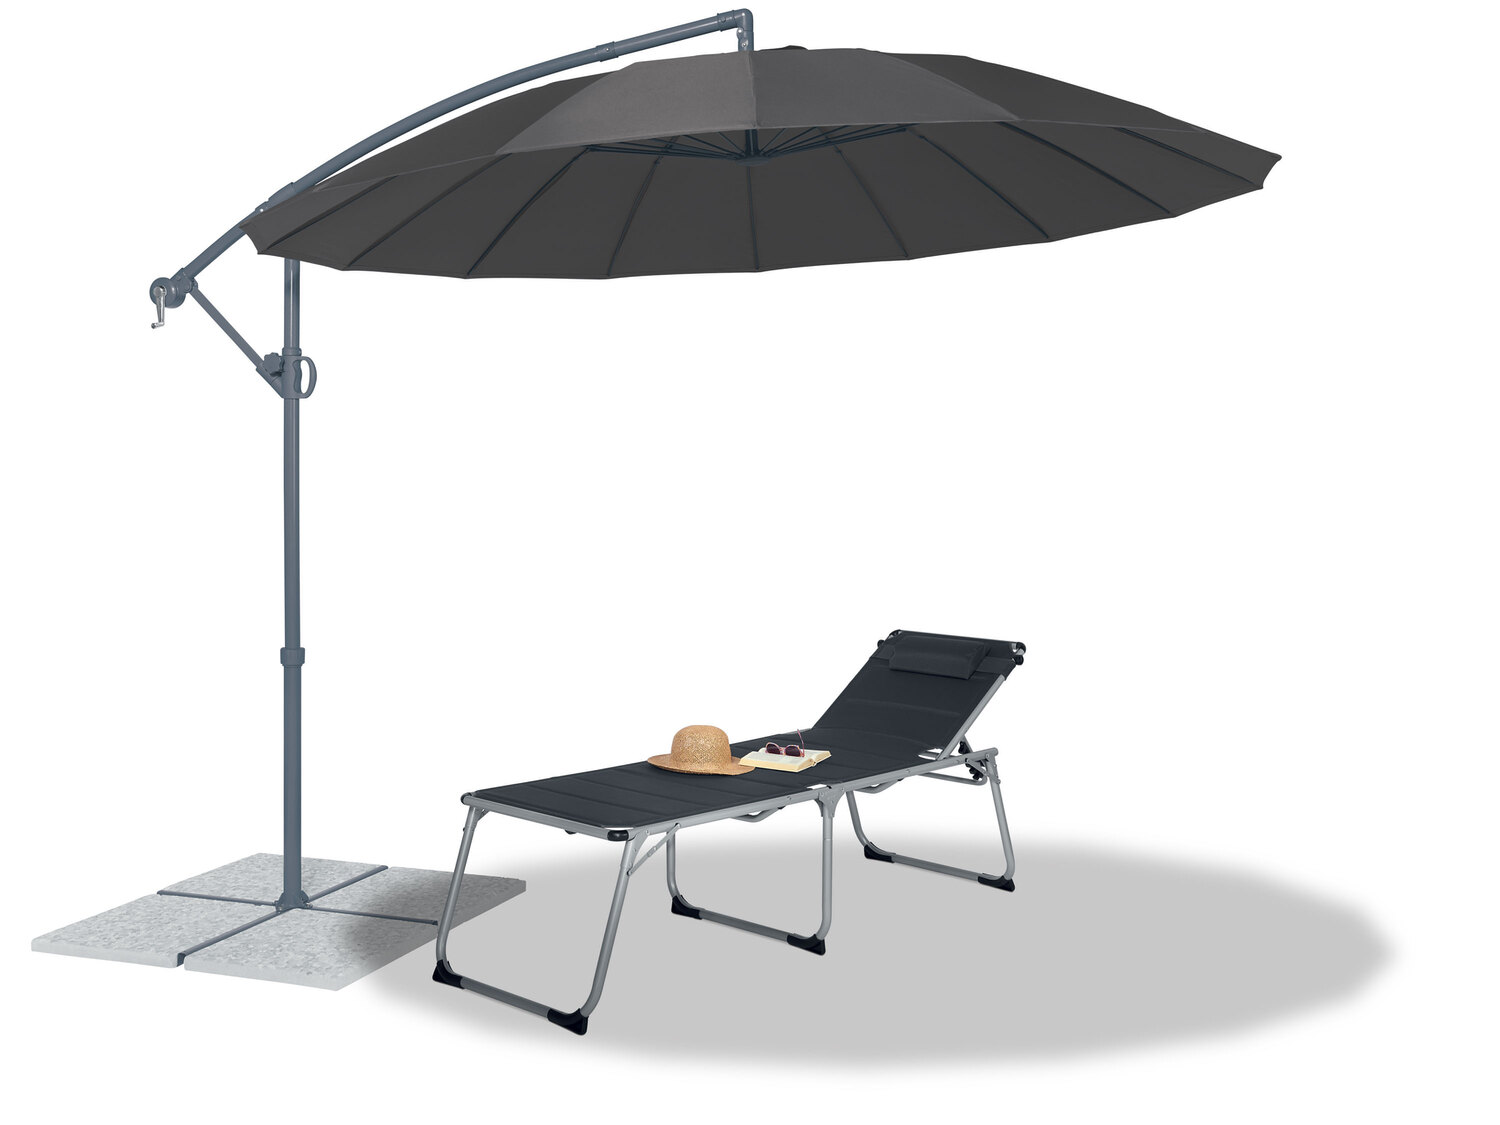 Parasol ogrodowy , cena 349,00 PLN 
- więcej przestrzeni pod parasolem dzięki ...